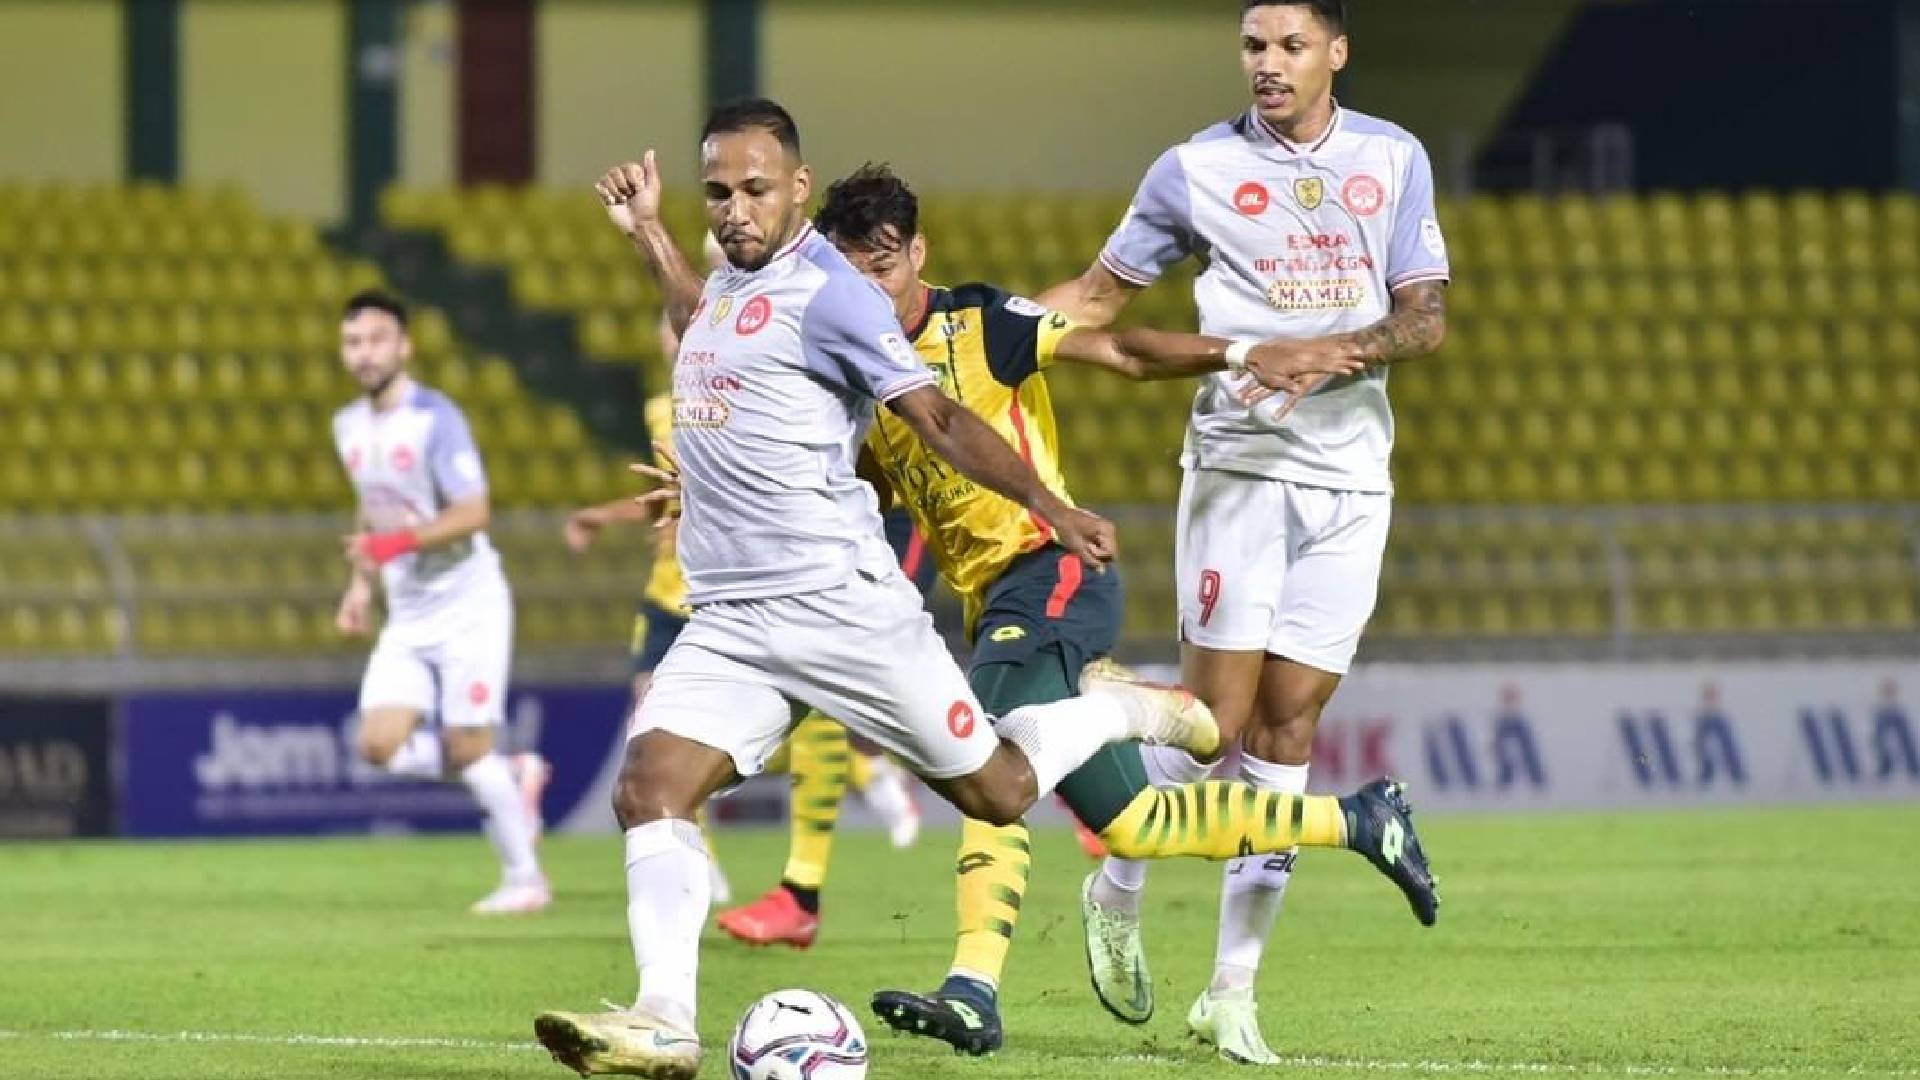 Melaka United 1 Melaka United, Kedah Rebut Juara Kumpulan Untuk Elak JDT Di Suku Akhir